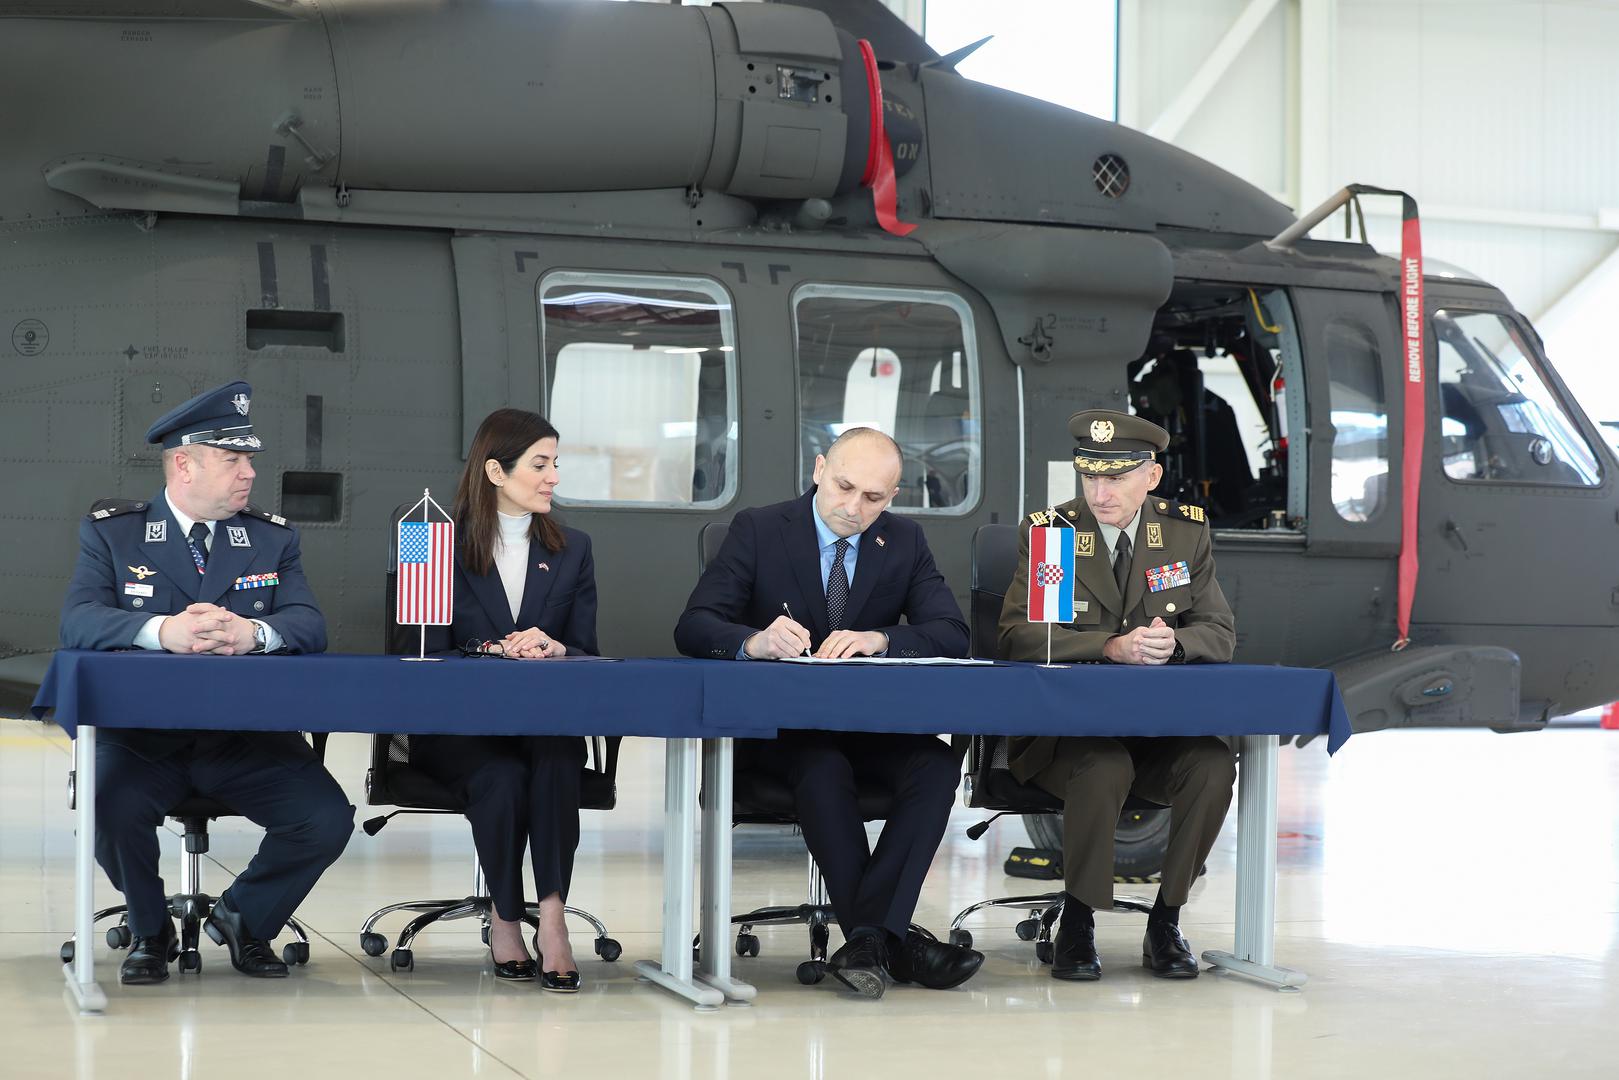 Nabava osam zrakoplova UH-60M Black Hawk predstavlja velik i bitan trenutak za Oružane snage RH i Hrvatsku, kazao je hrvatski ministar obrane Ivan Anušić u vojarni Lučko prilikom potpisivanja ugovora sa SAD-om o njihovoj kupnji.